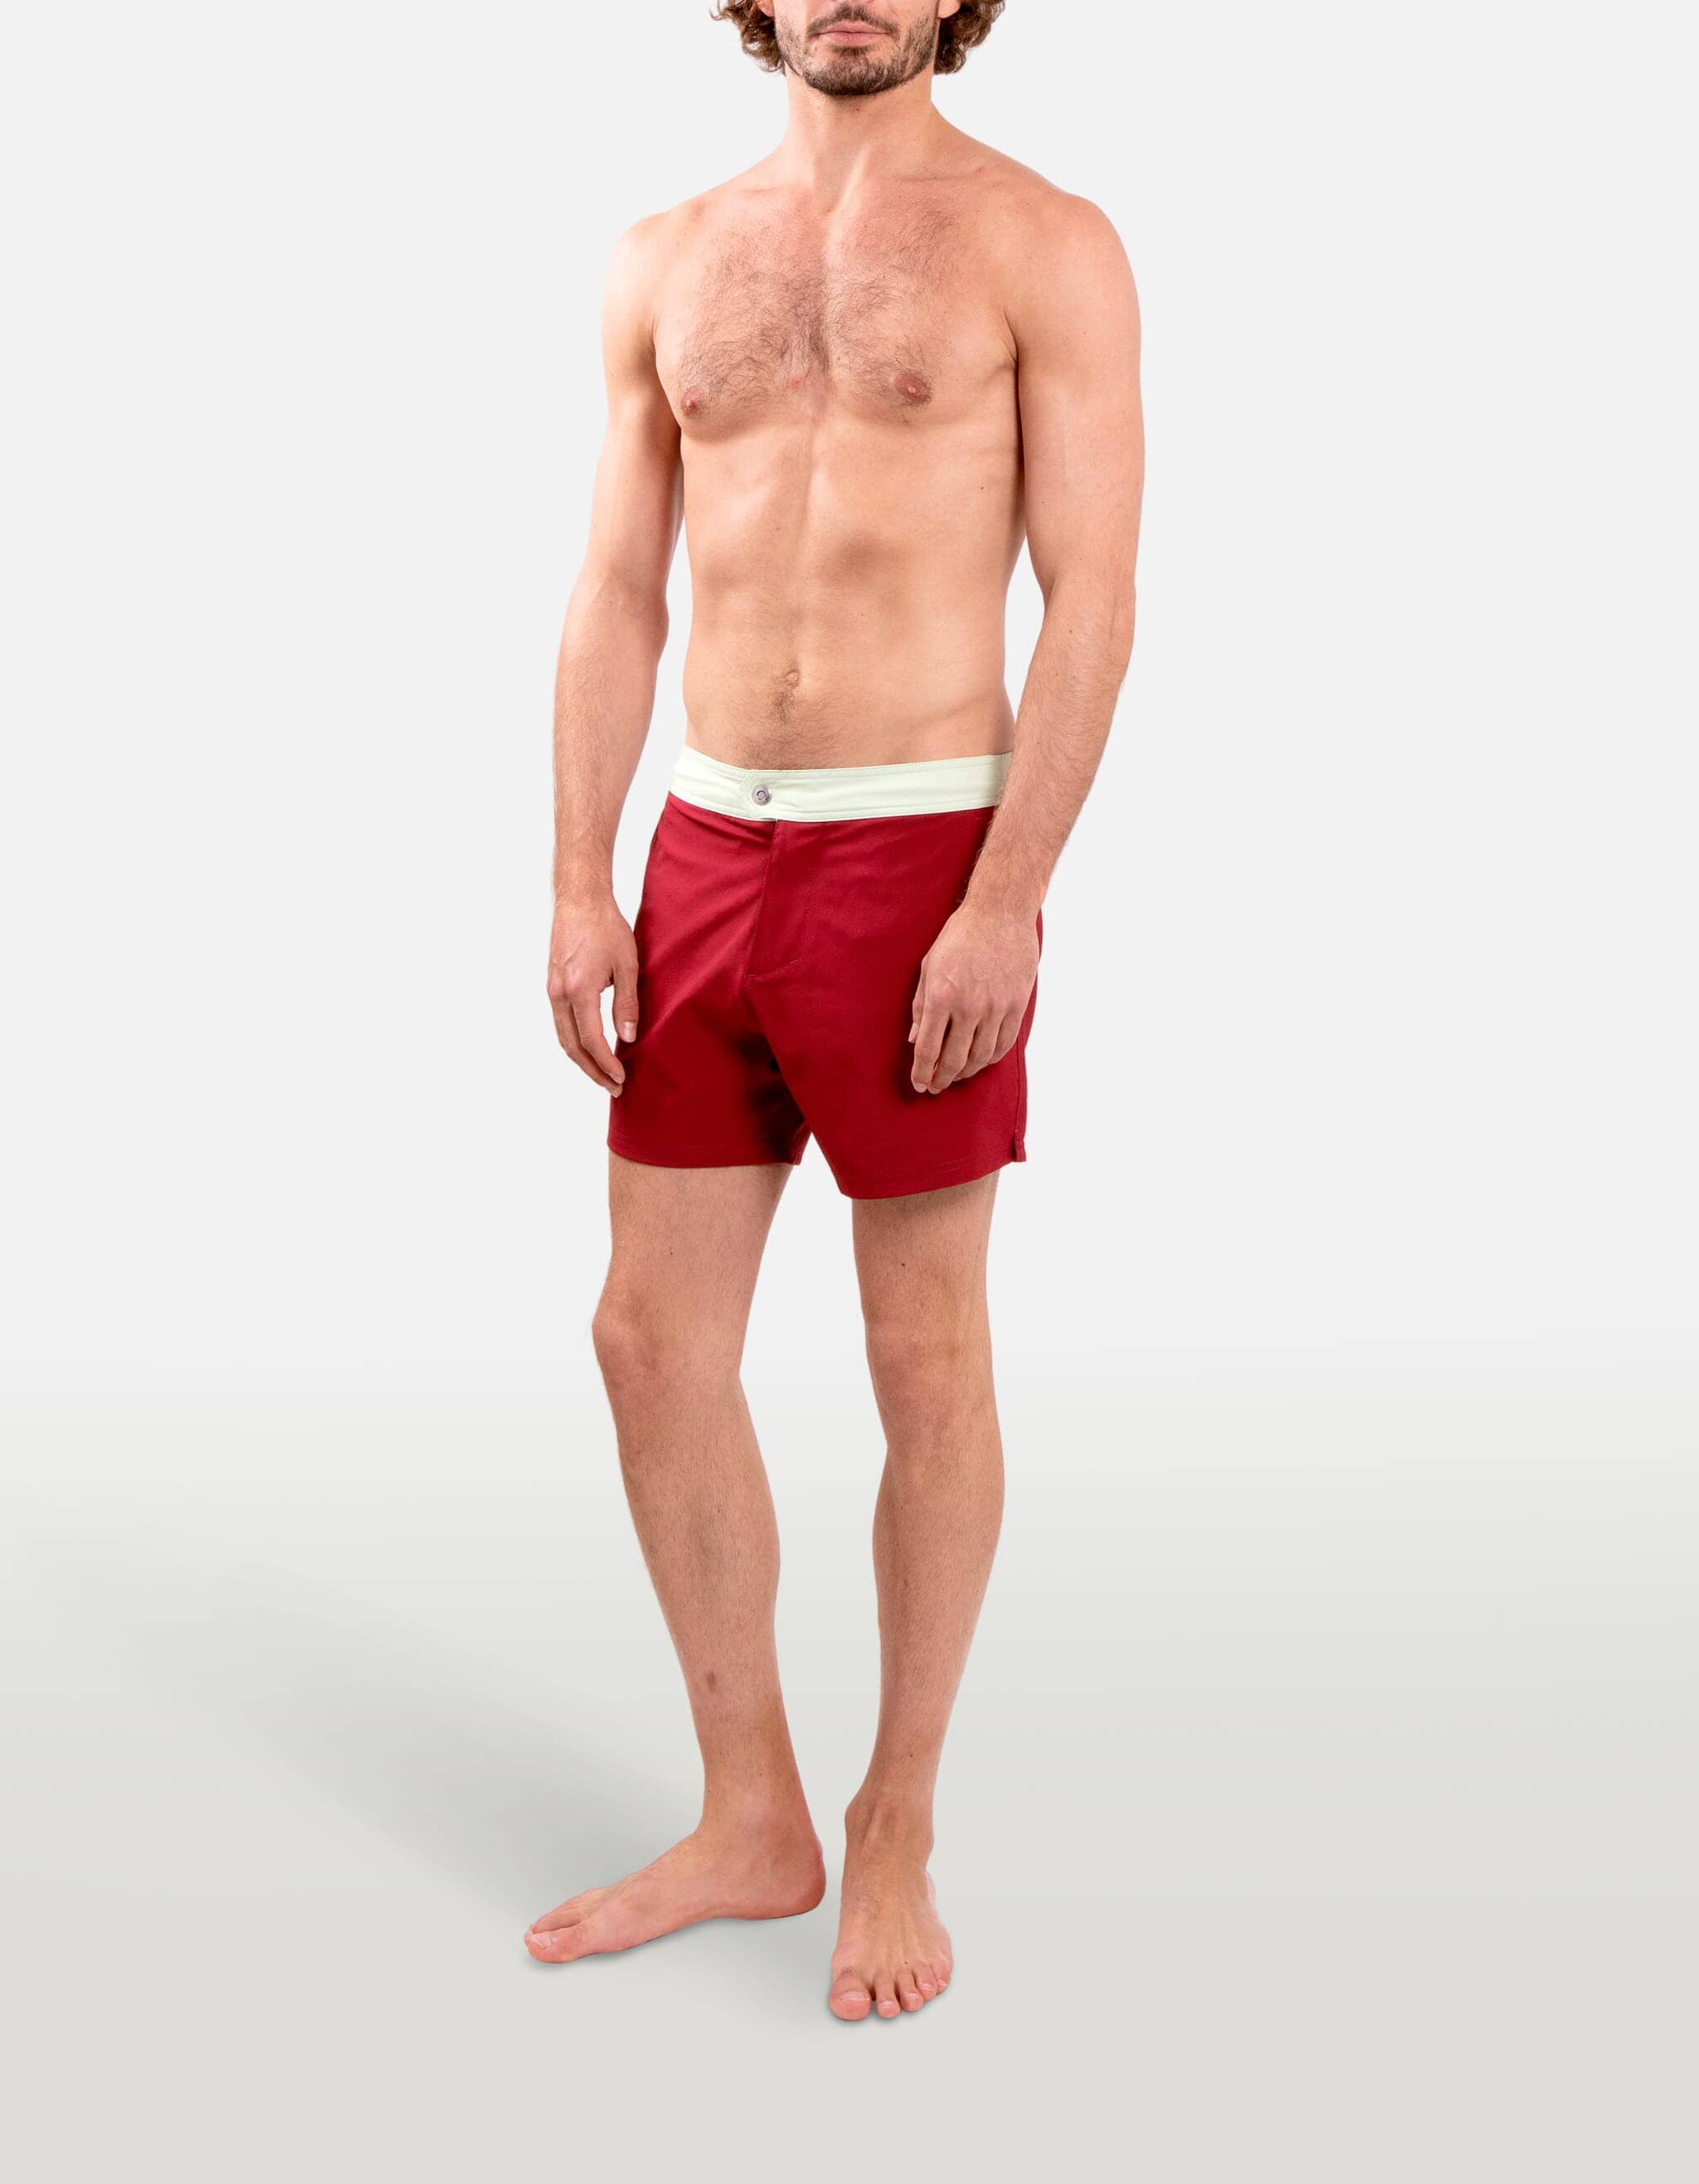 Ben - 02. Bordeau & Tea Swim Shorts - Ben MACKEENE 